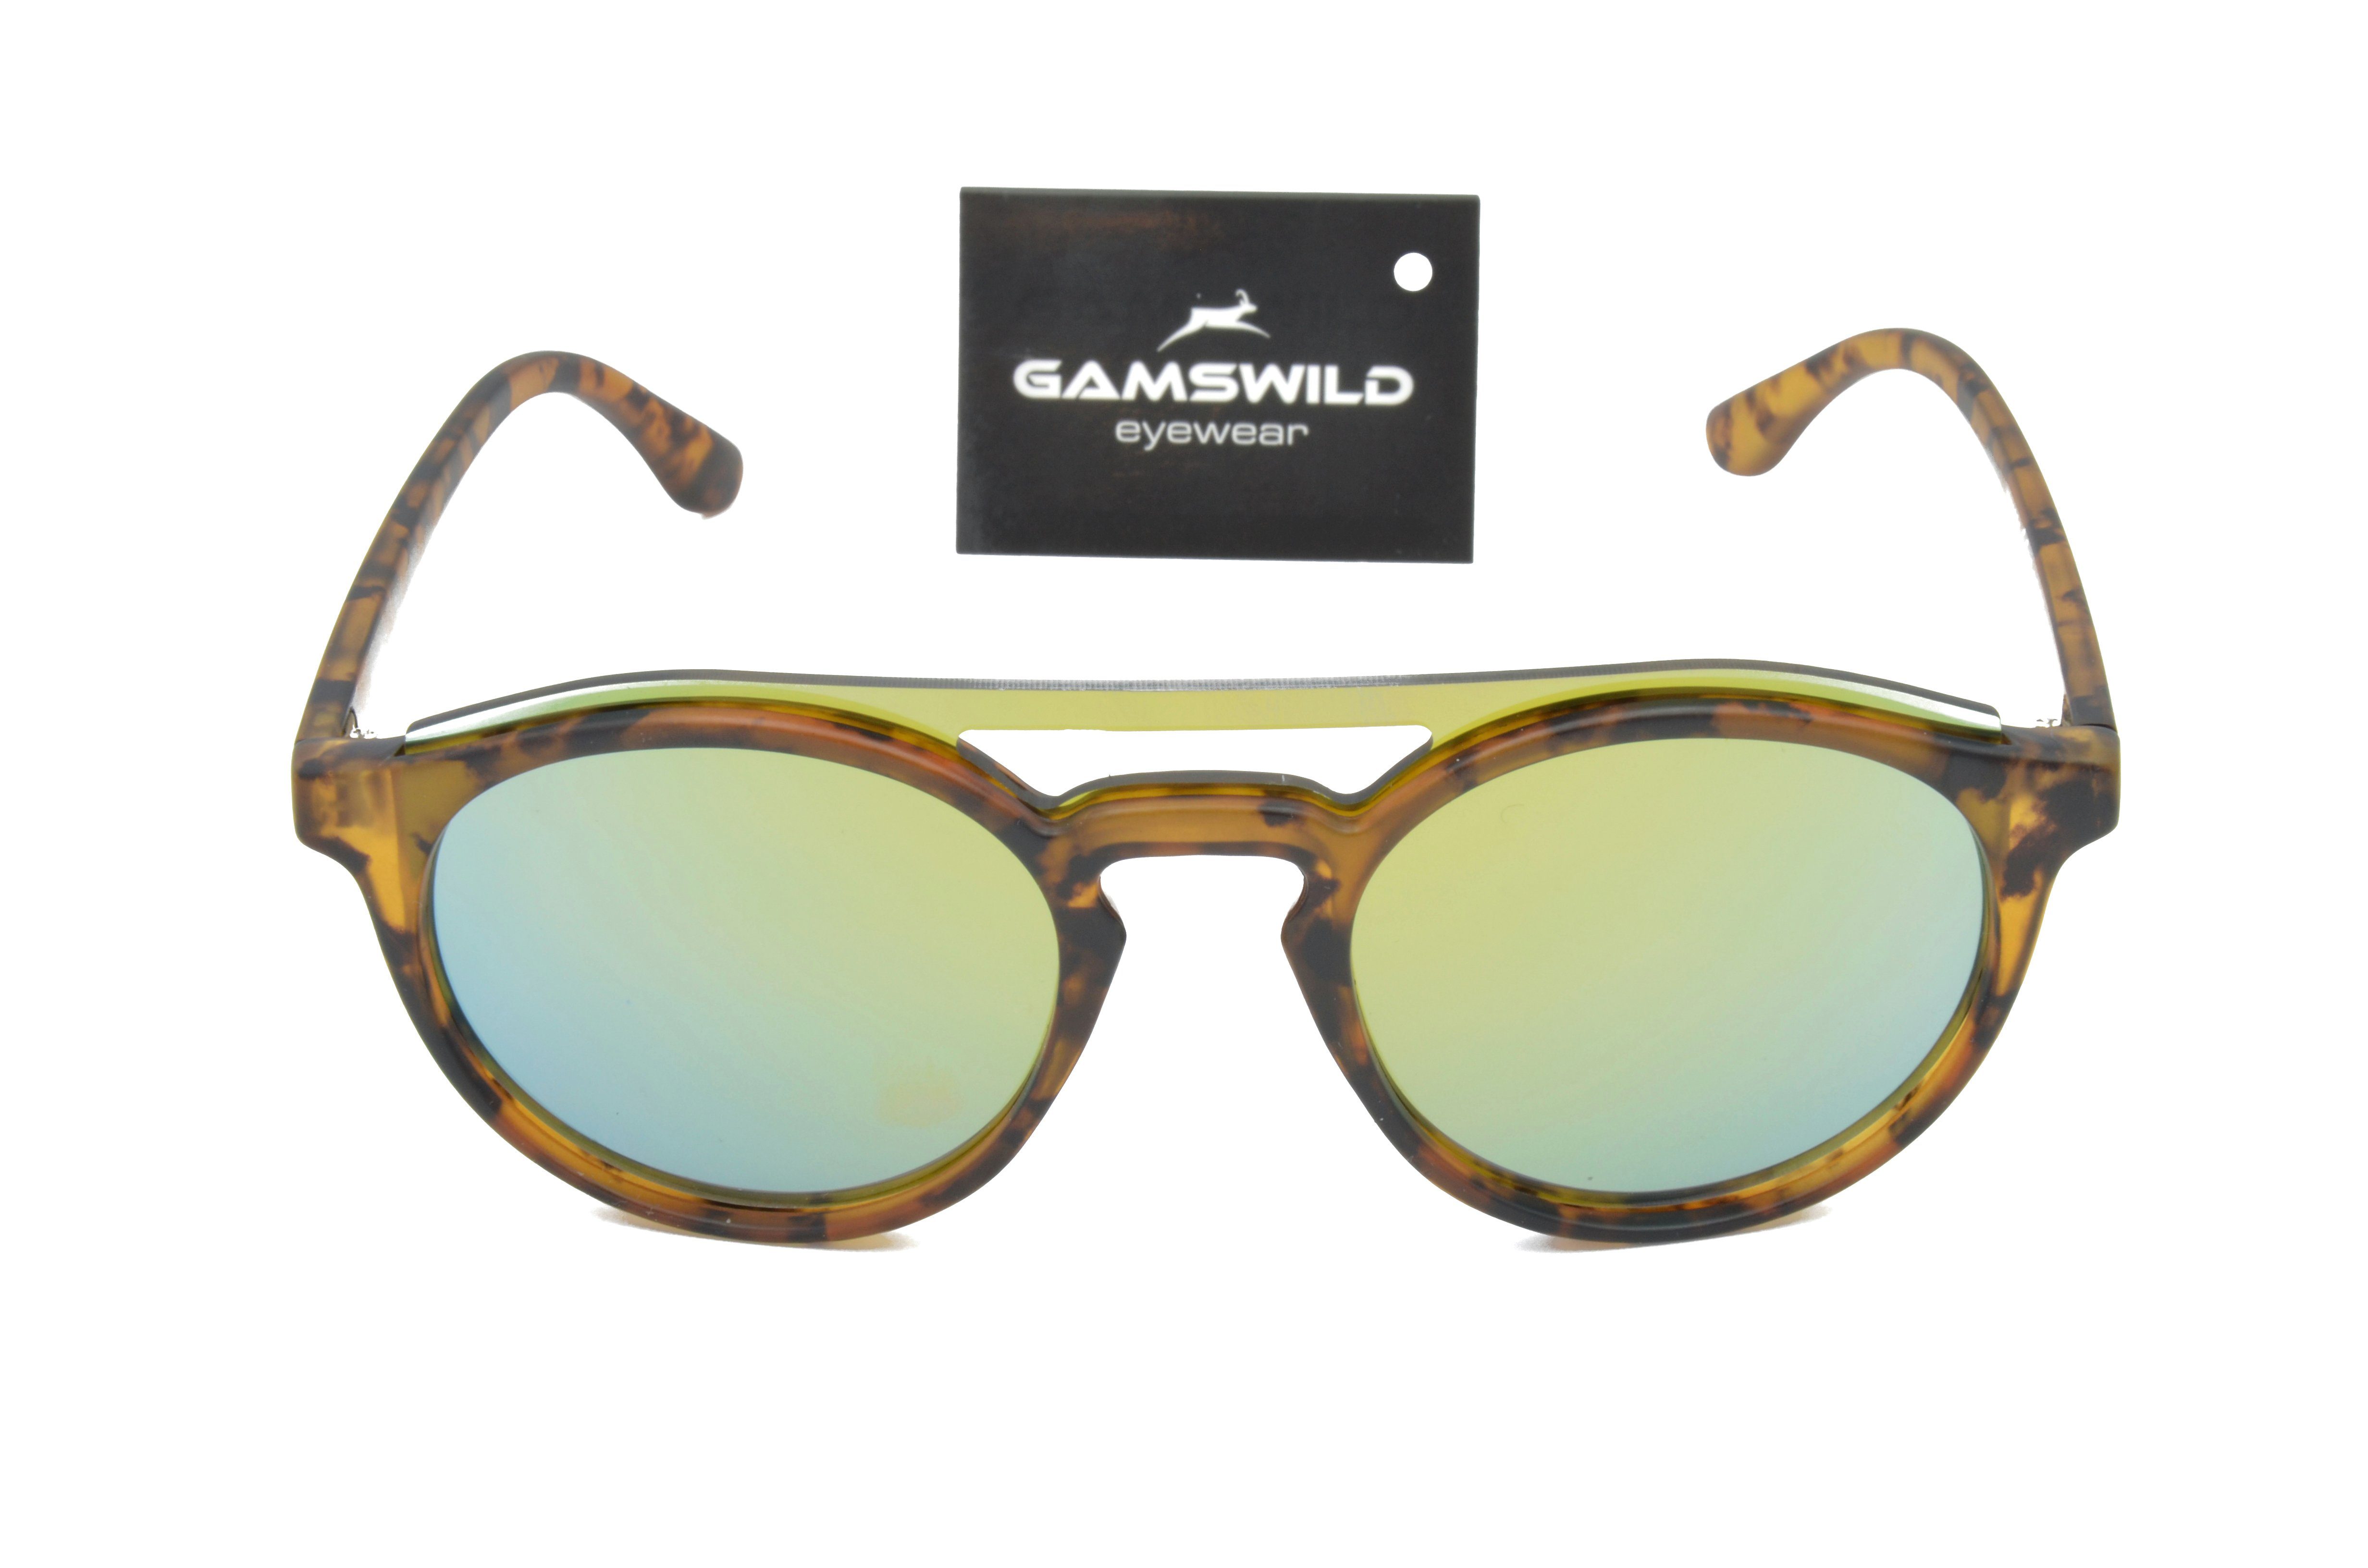 blau, GAMSSTYLE Herren Gamswild WM1221 grün, Sonnenbrille Brille grün, Damen Mode braun Fashionbrille, Unisex